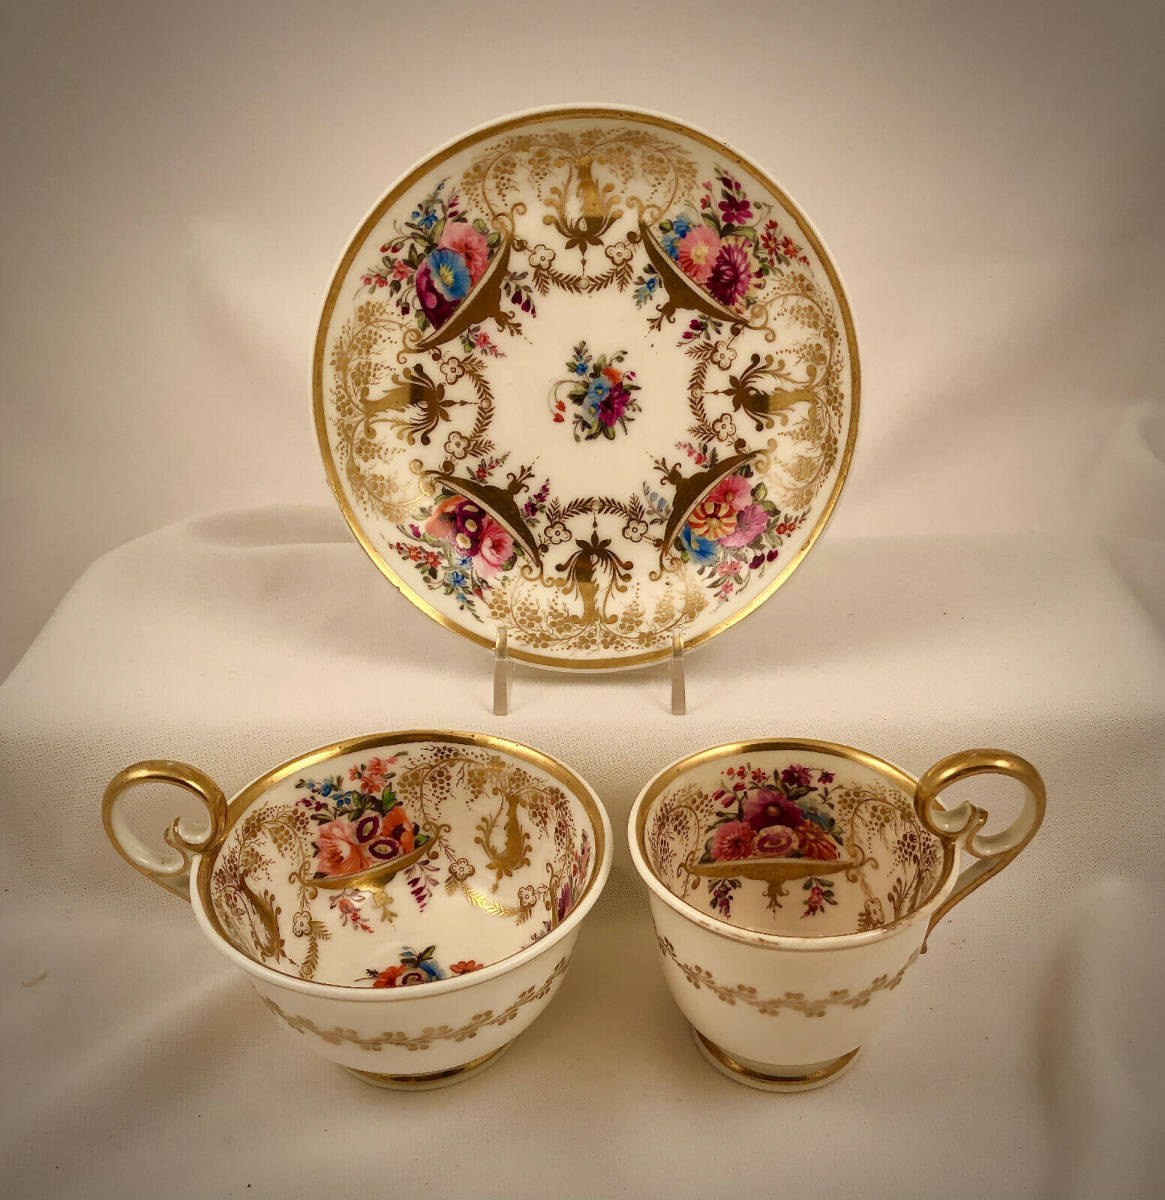 Антикварная чайно-кофейная чашка с блюдцем из Нантского залива, ручная роспись, около 1817 года. Антикварный винтаж., кухня, посуда, посуда, другие